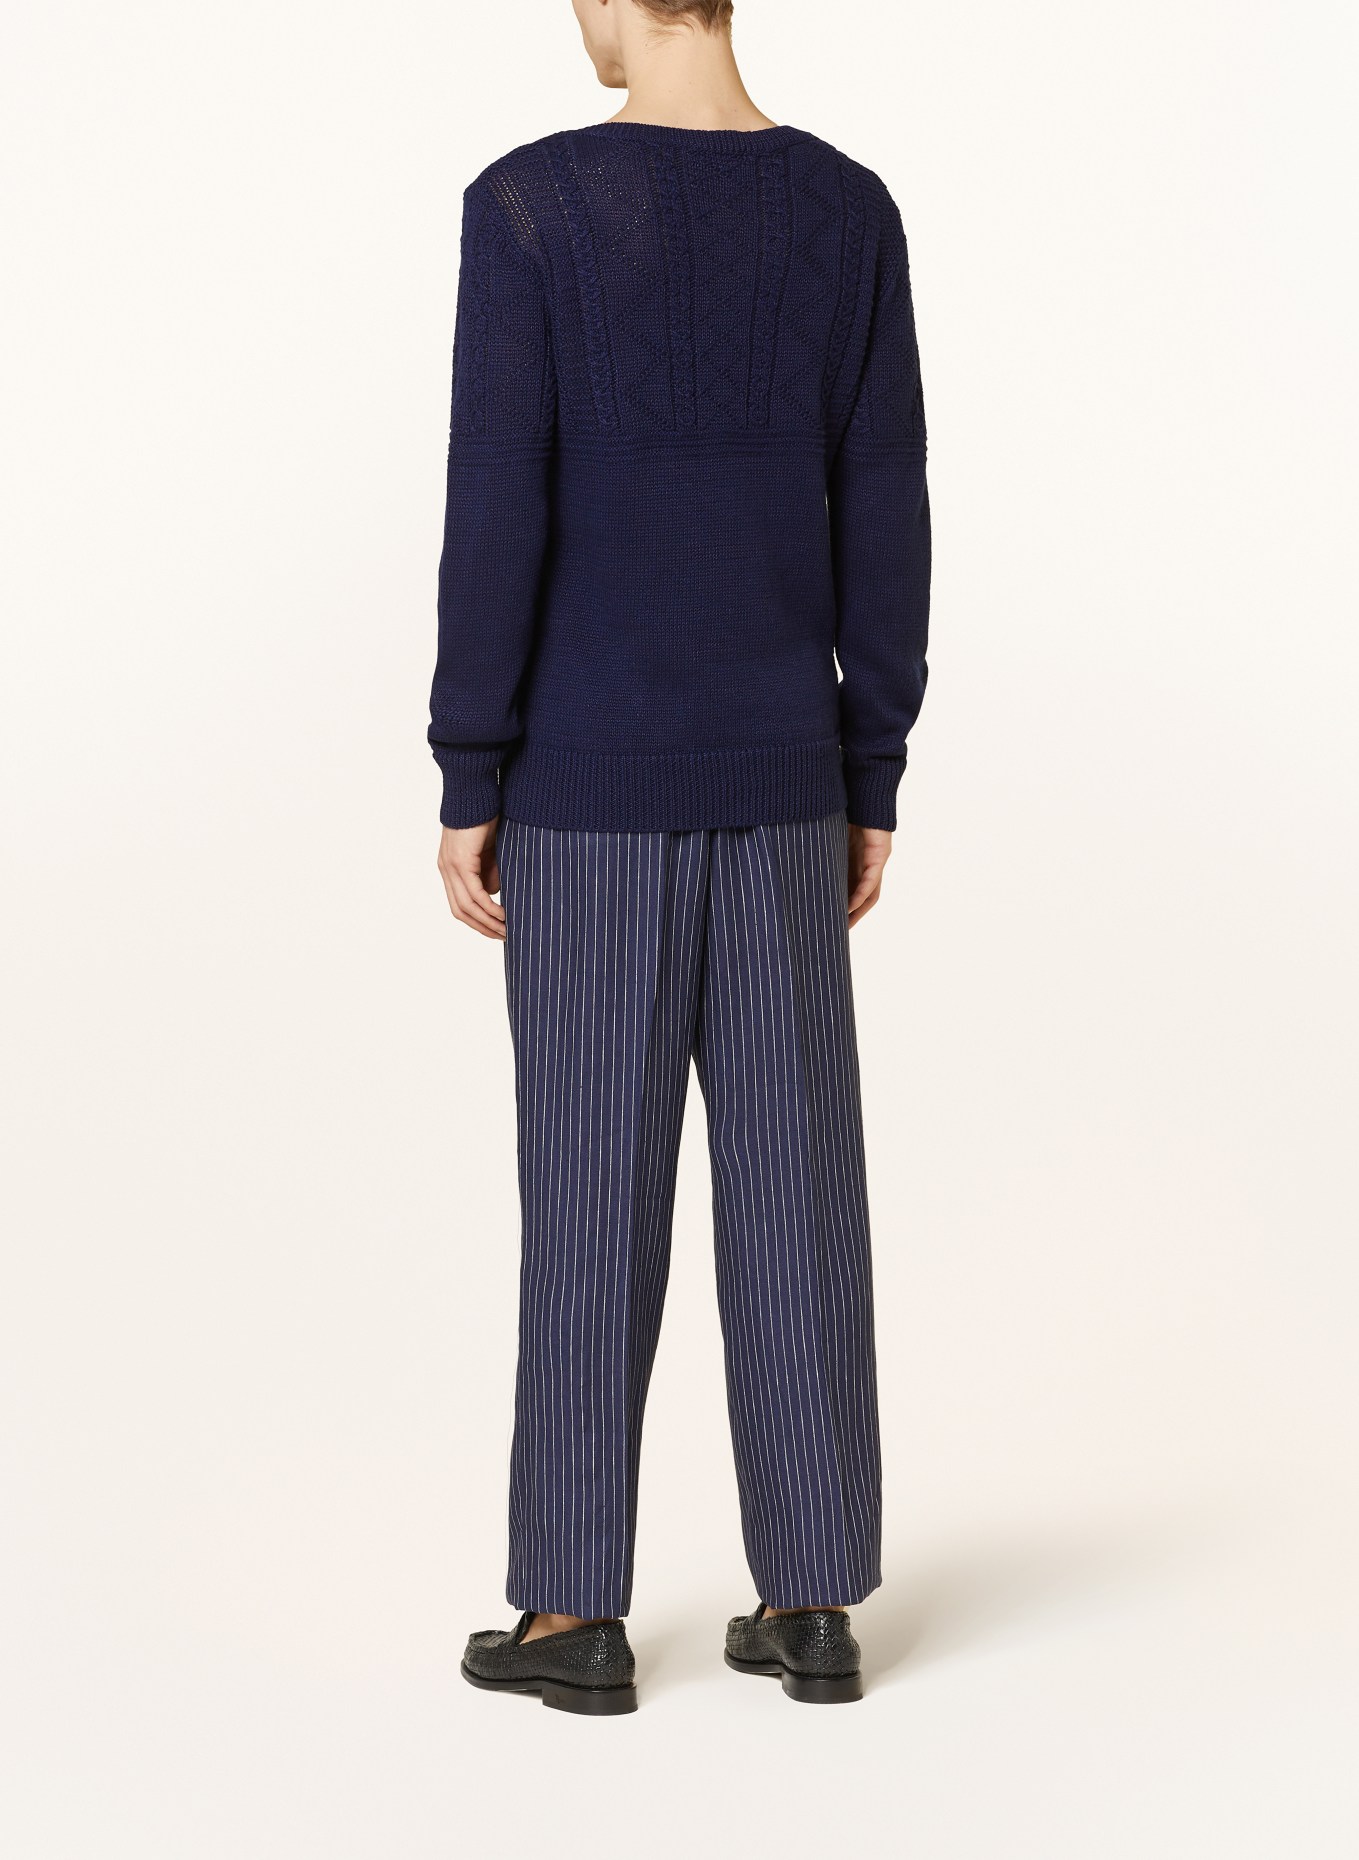 RALPH LAUREN PURPLE LABEL Sweater with linen, Color: DARK BLUE (Image 3)